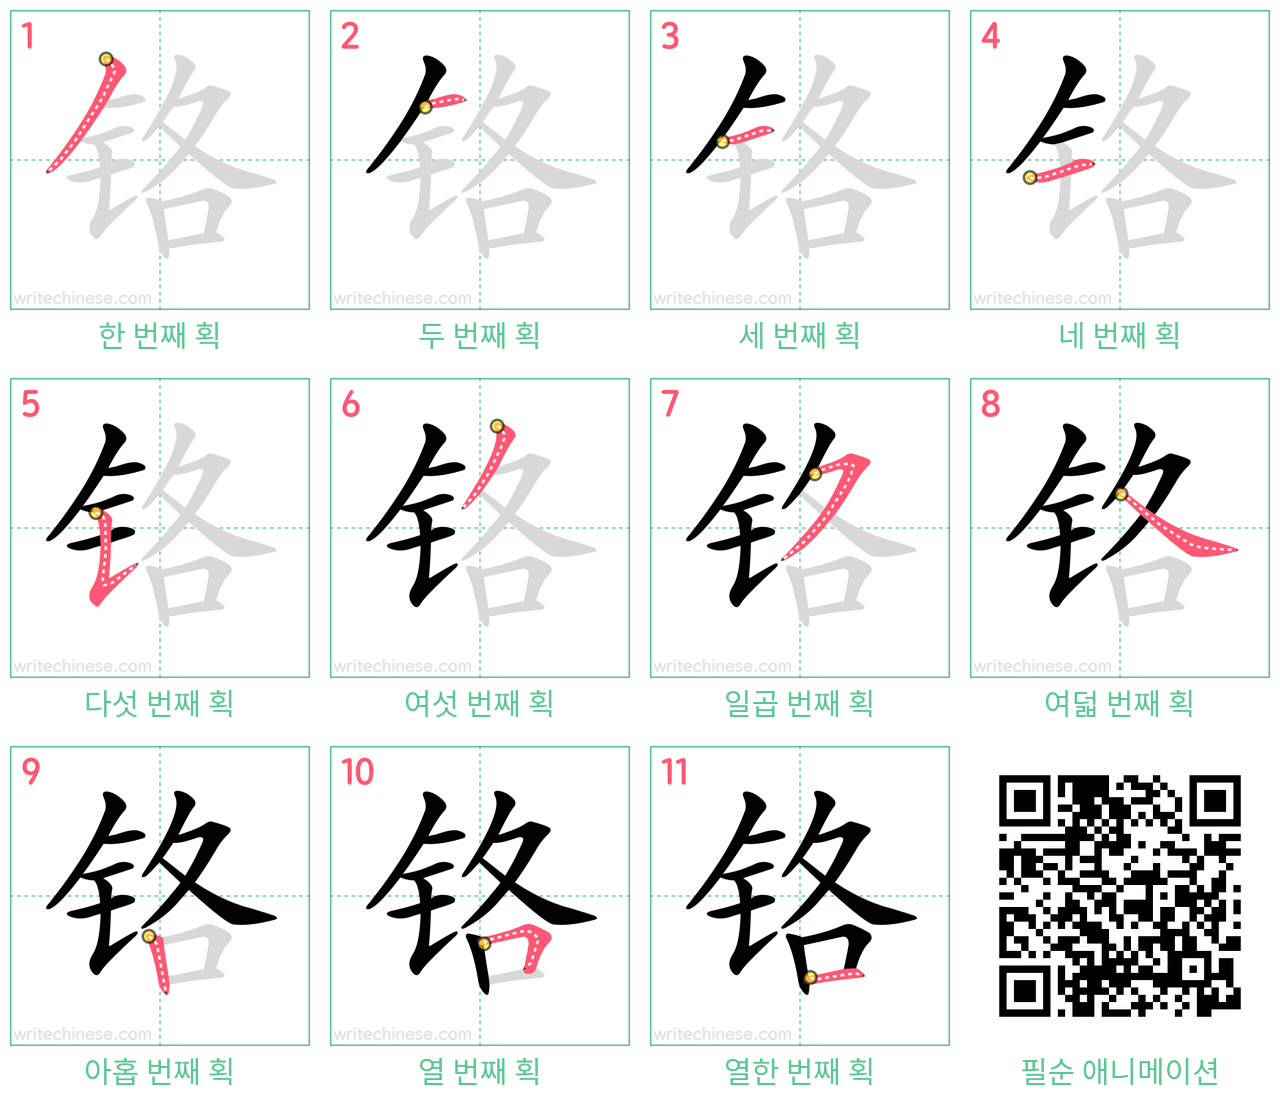 铬 step-by-step stroke order diagrams